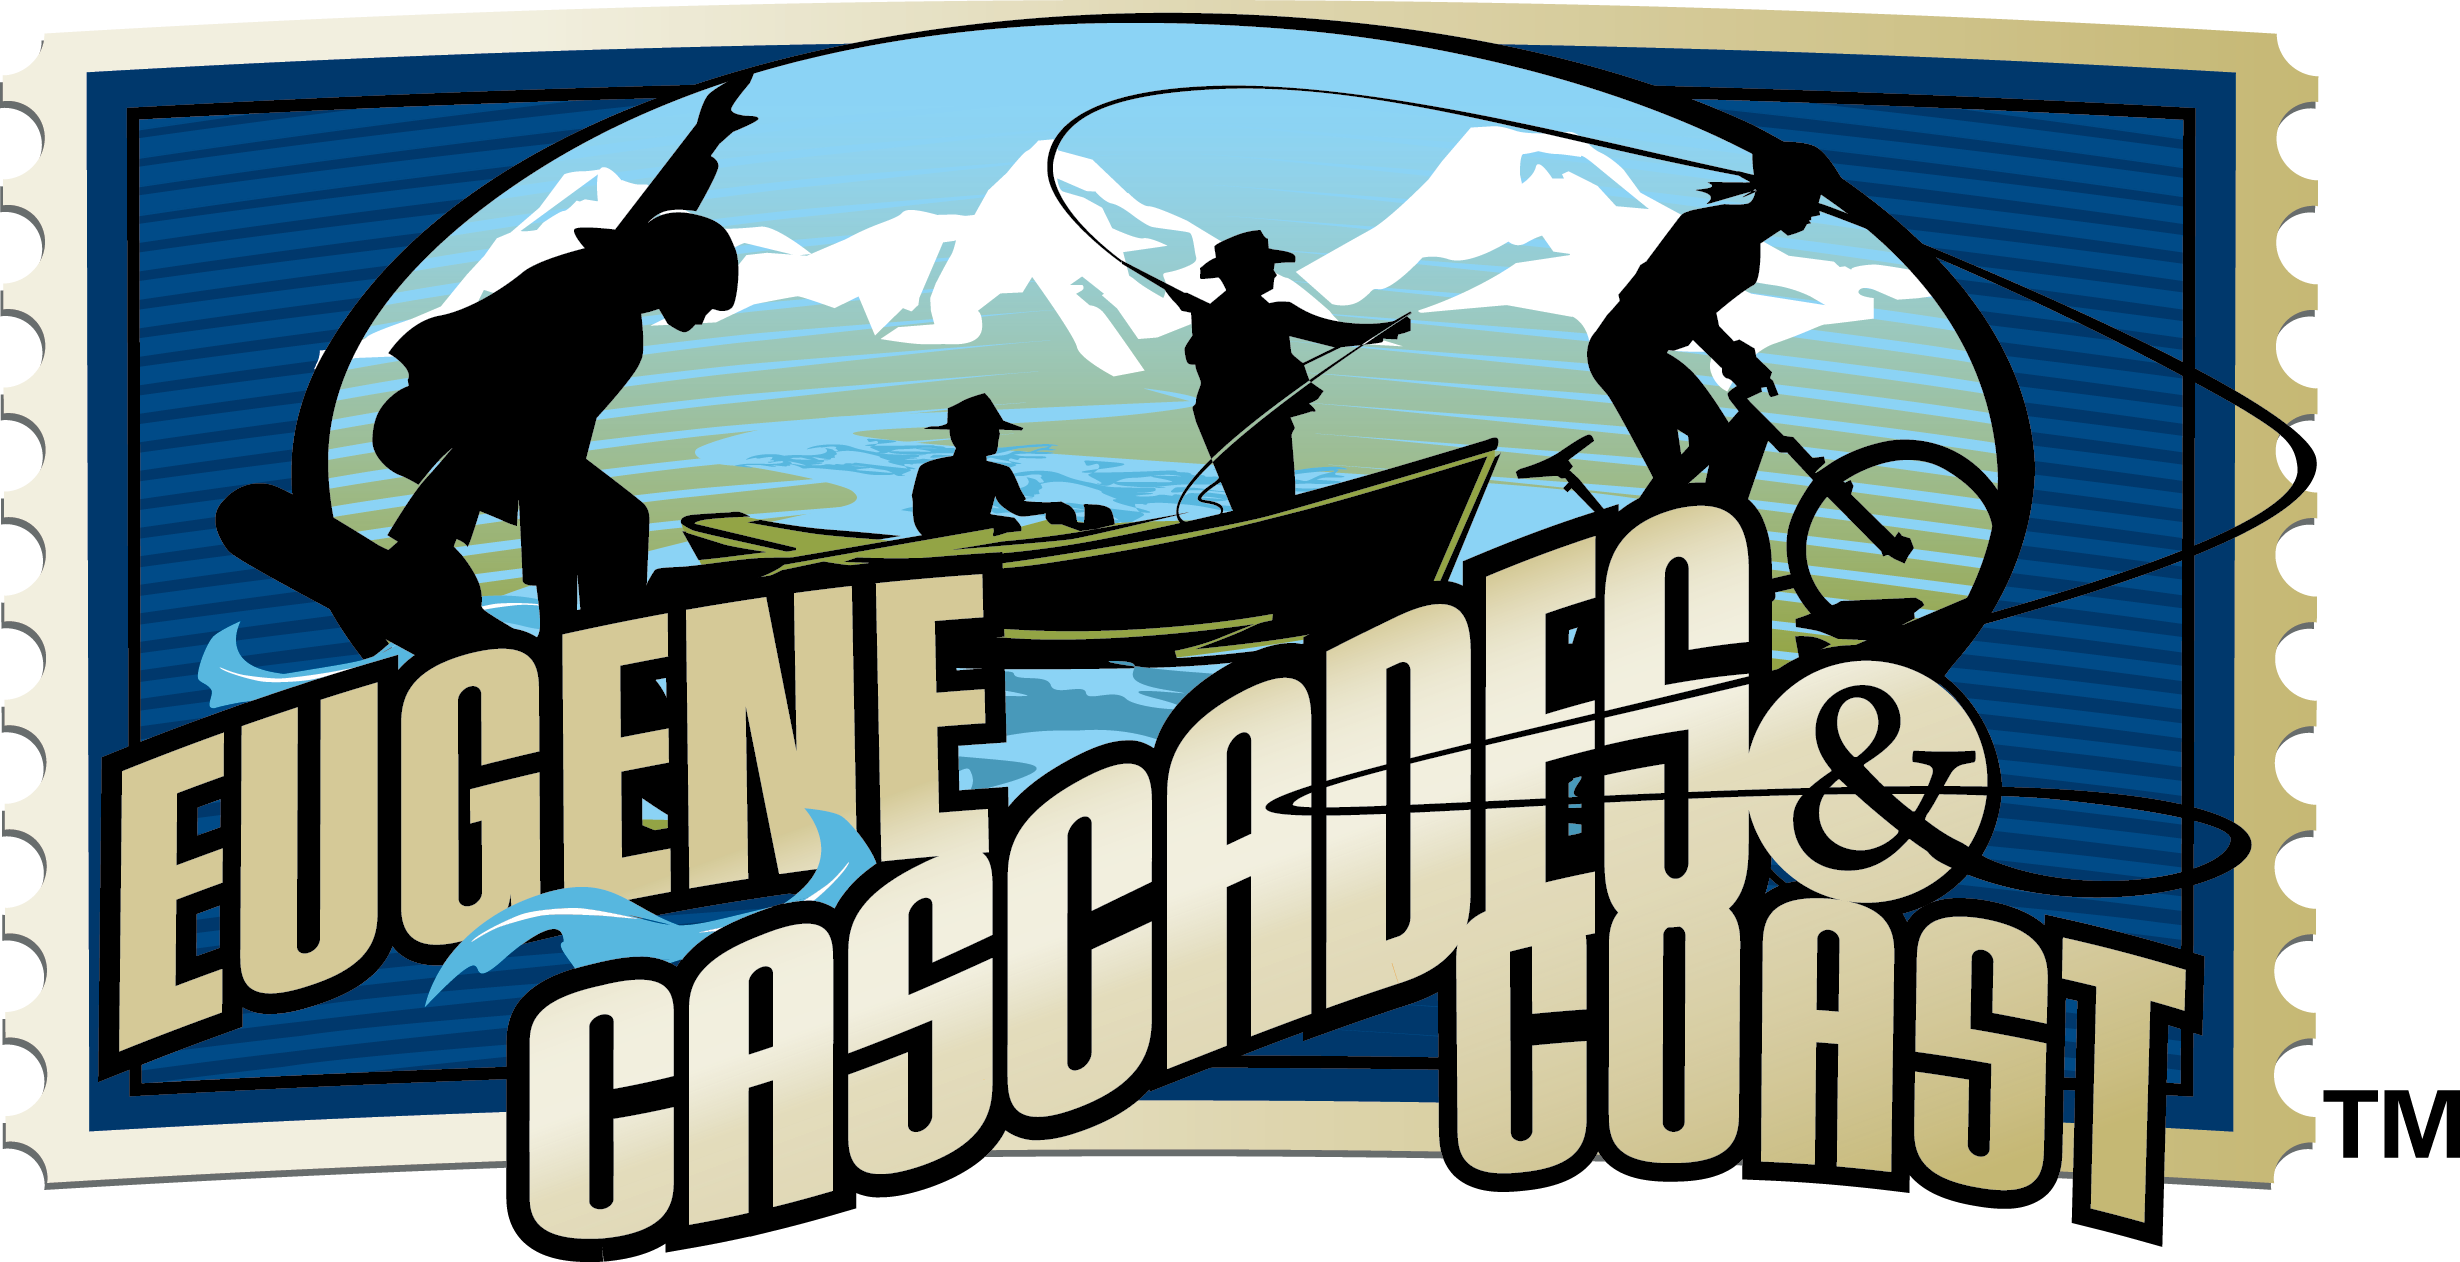 Eugene, Cascades & Coast Logo